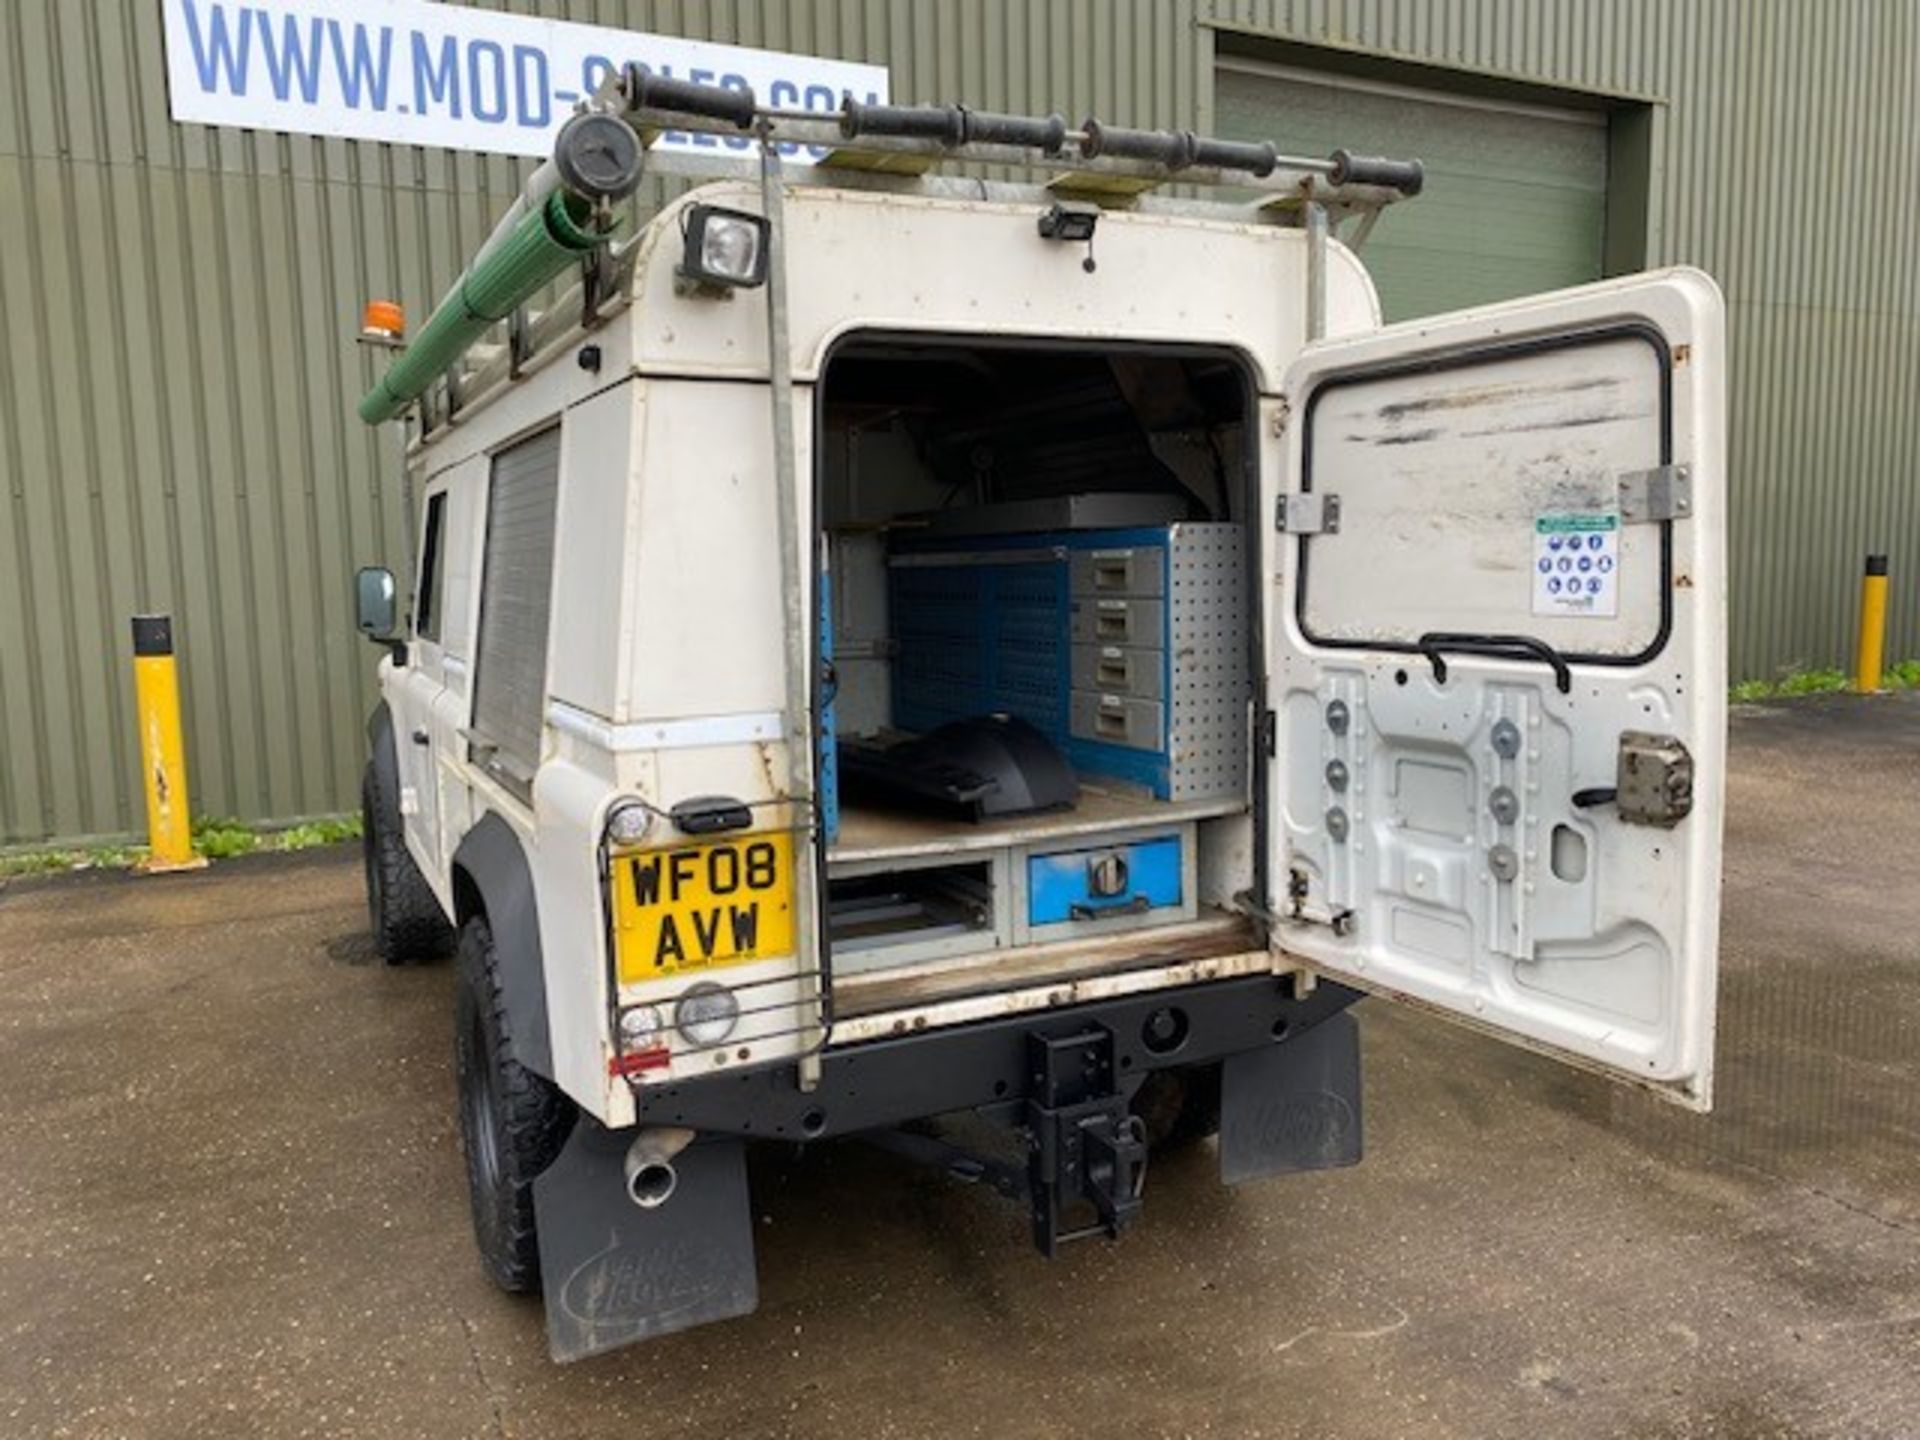 Land Rover Defender 110 2.4 Utility (mobile workshop) - Image 42 of 64